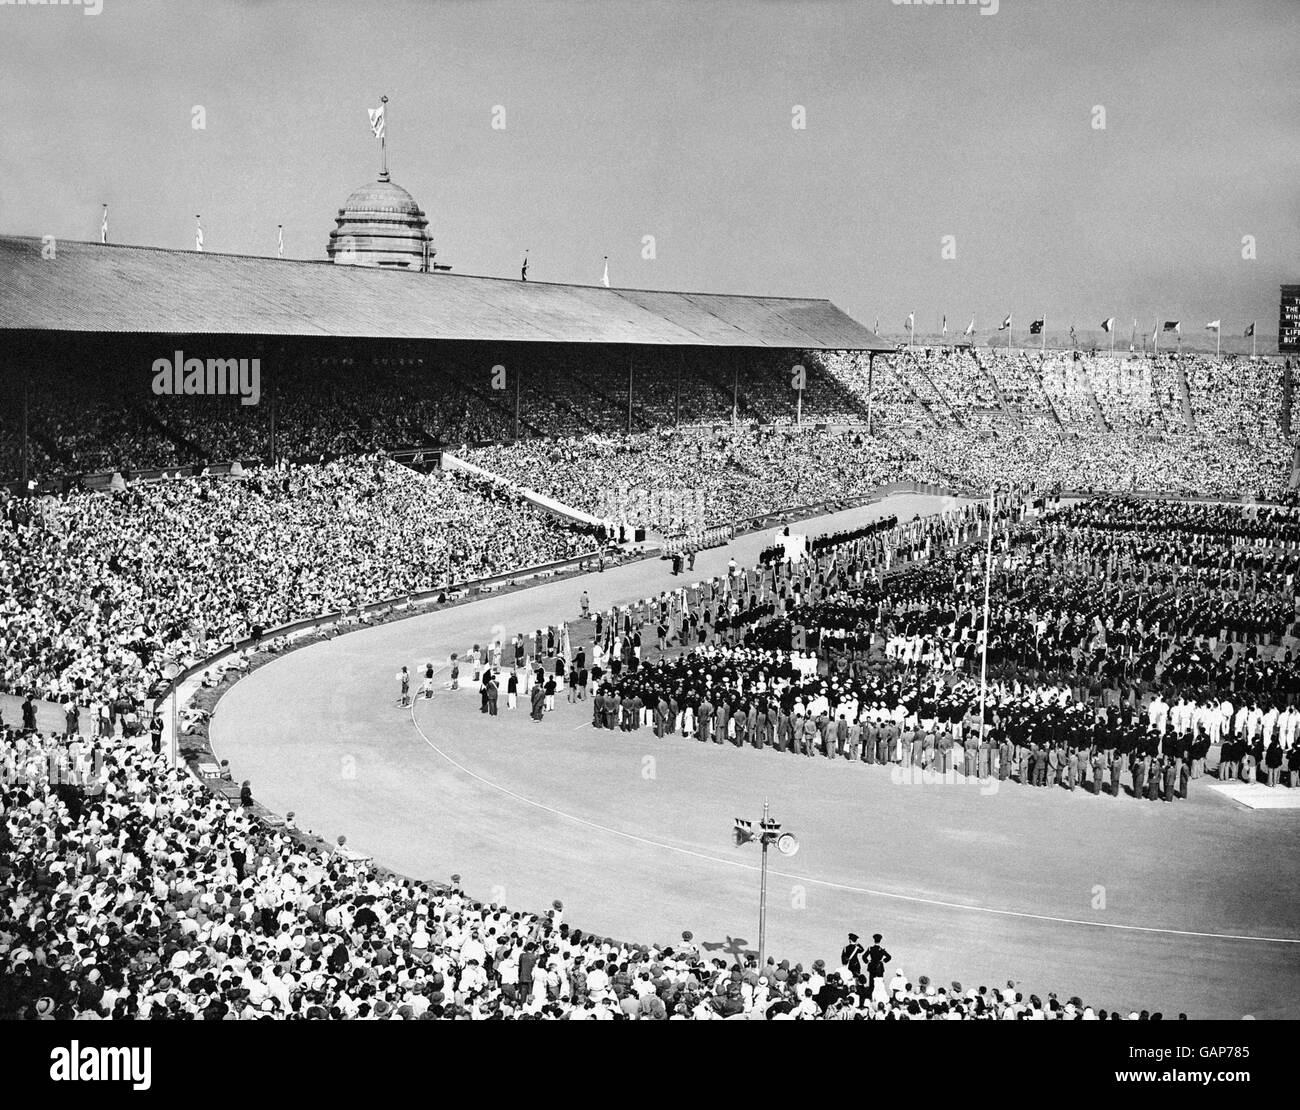 London Olympic Games 1948 - Opening Ceremony - Wembley Stadium Stock Photo